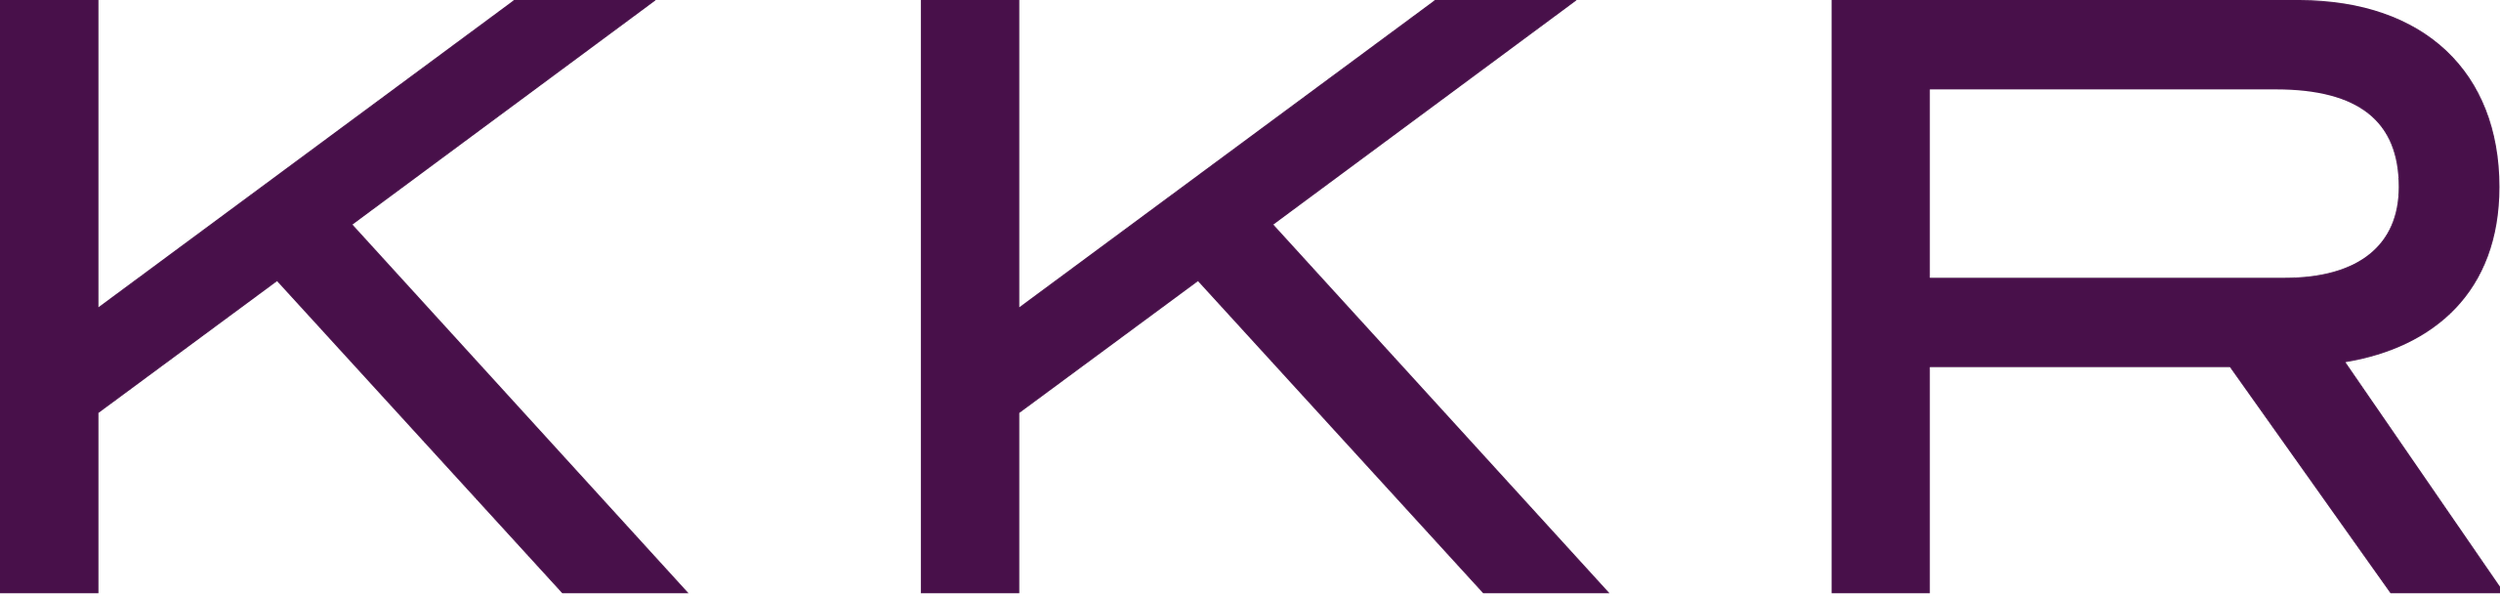 Kohlberg_Kravis_Roberts_(logo).svg.png